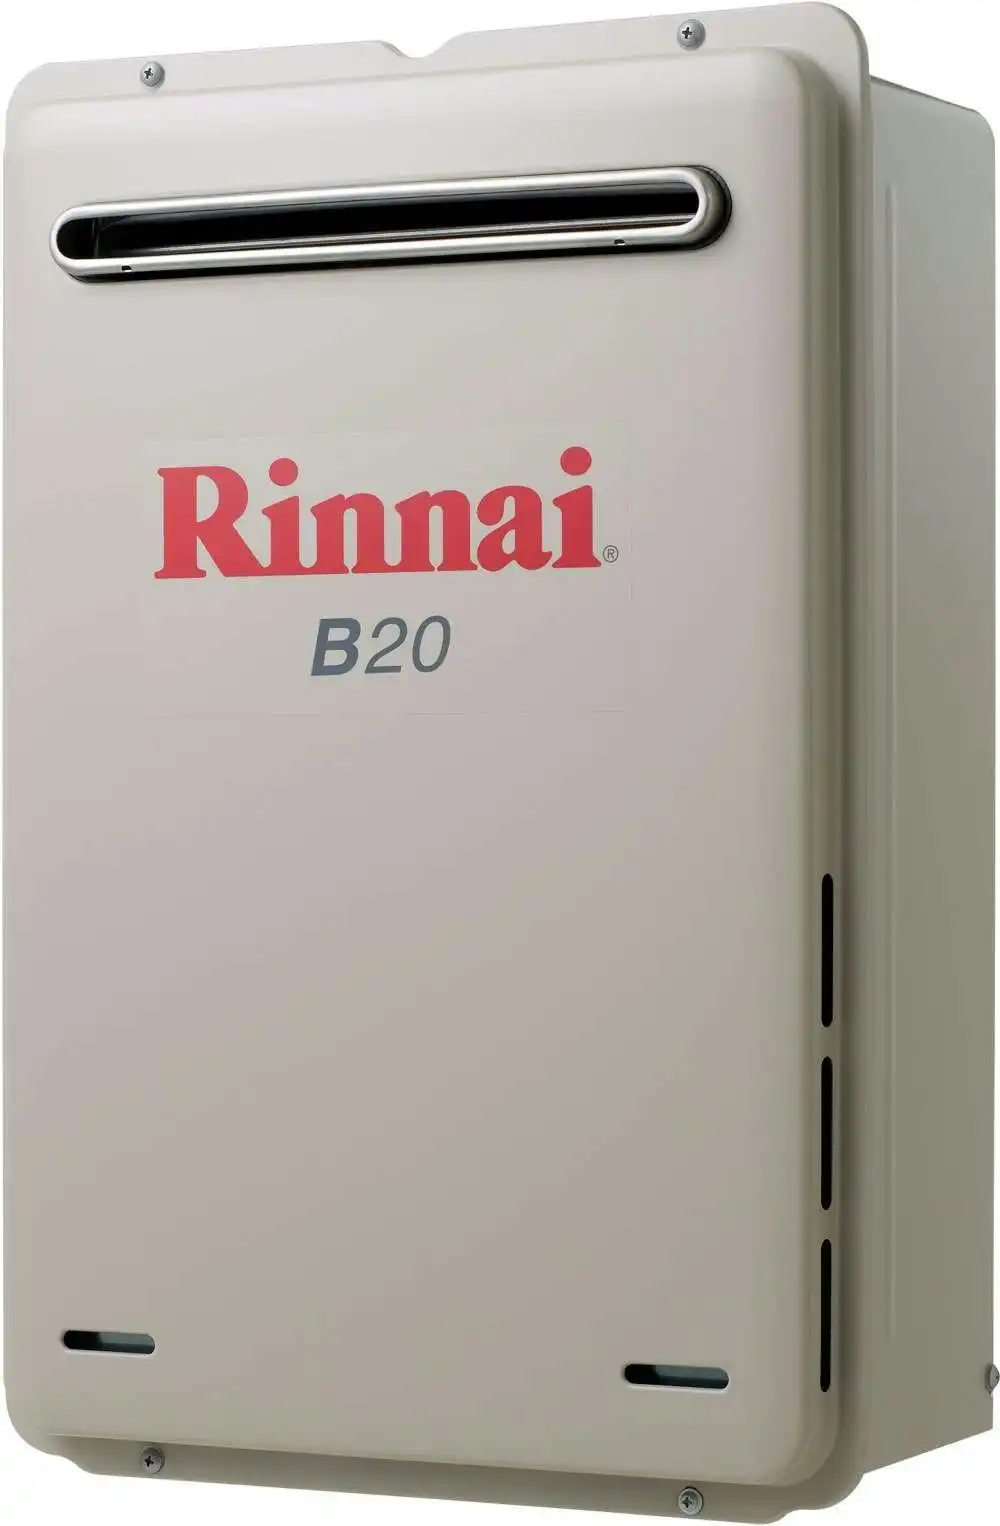 Rinnai Builders 50oC 20L Instant Hot Water System B20L50A B20 *LPG GAS*